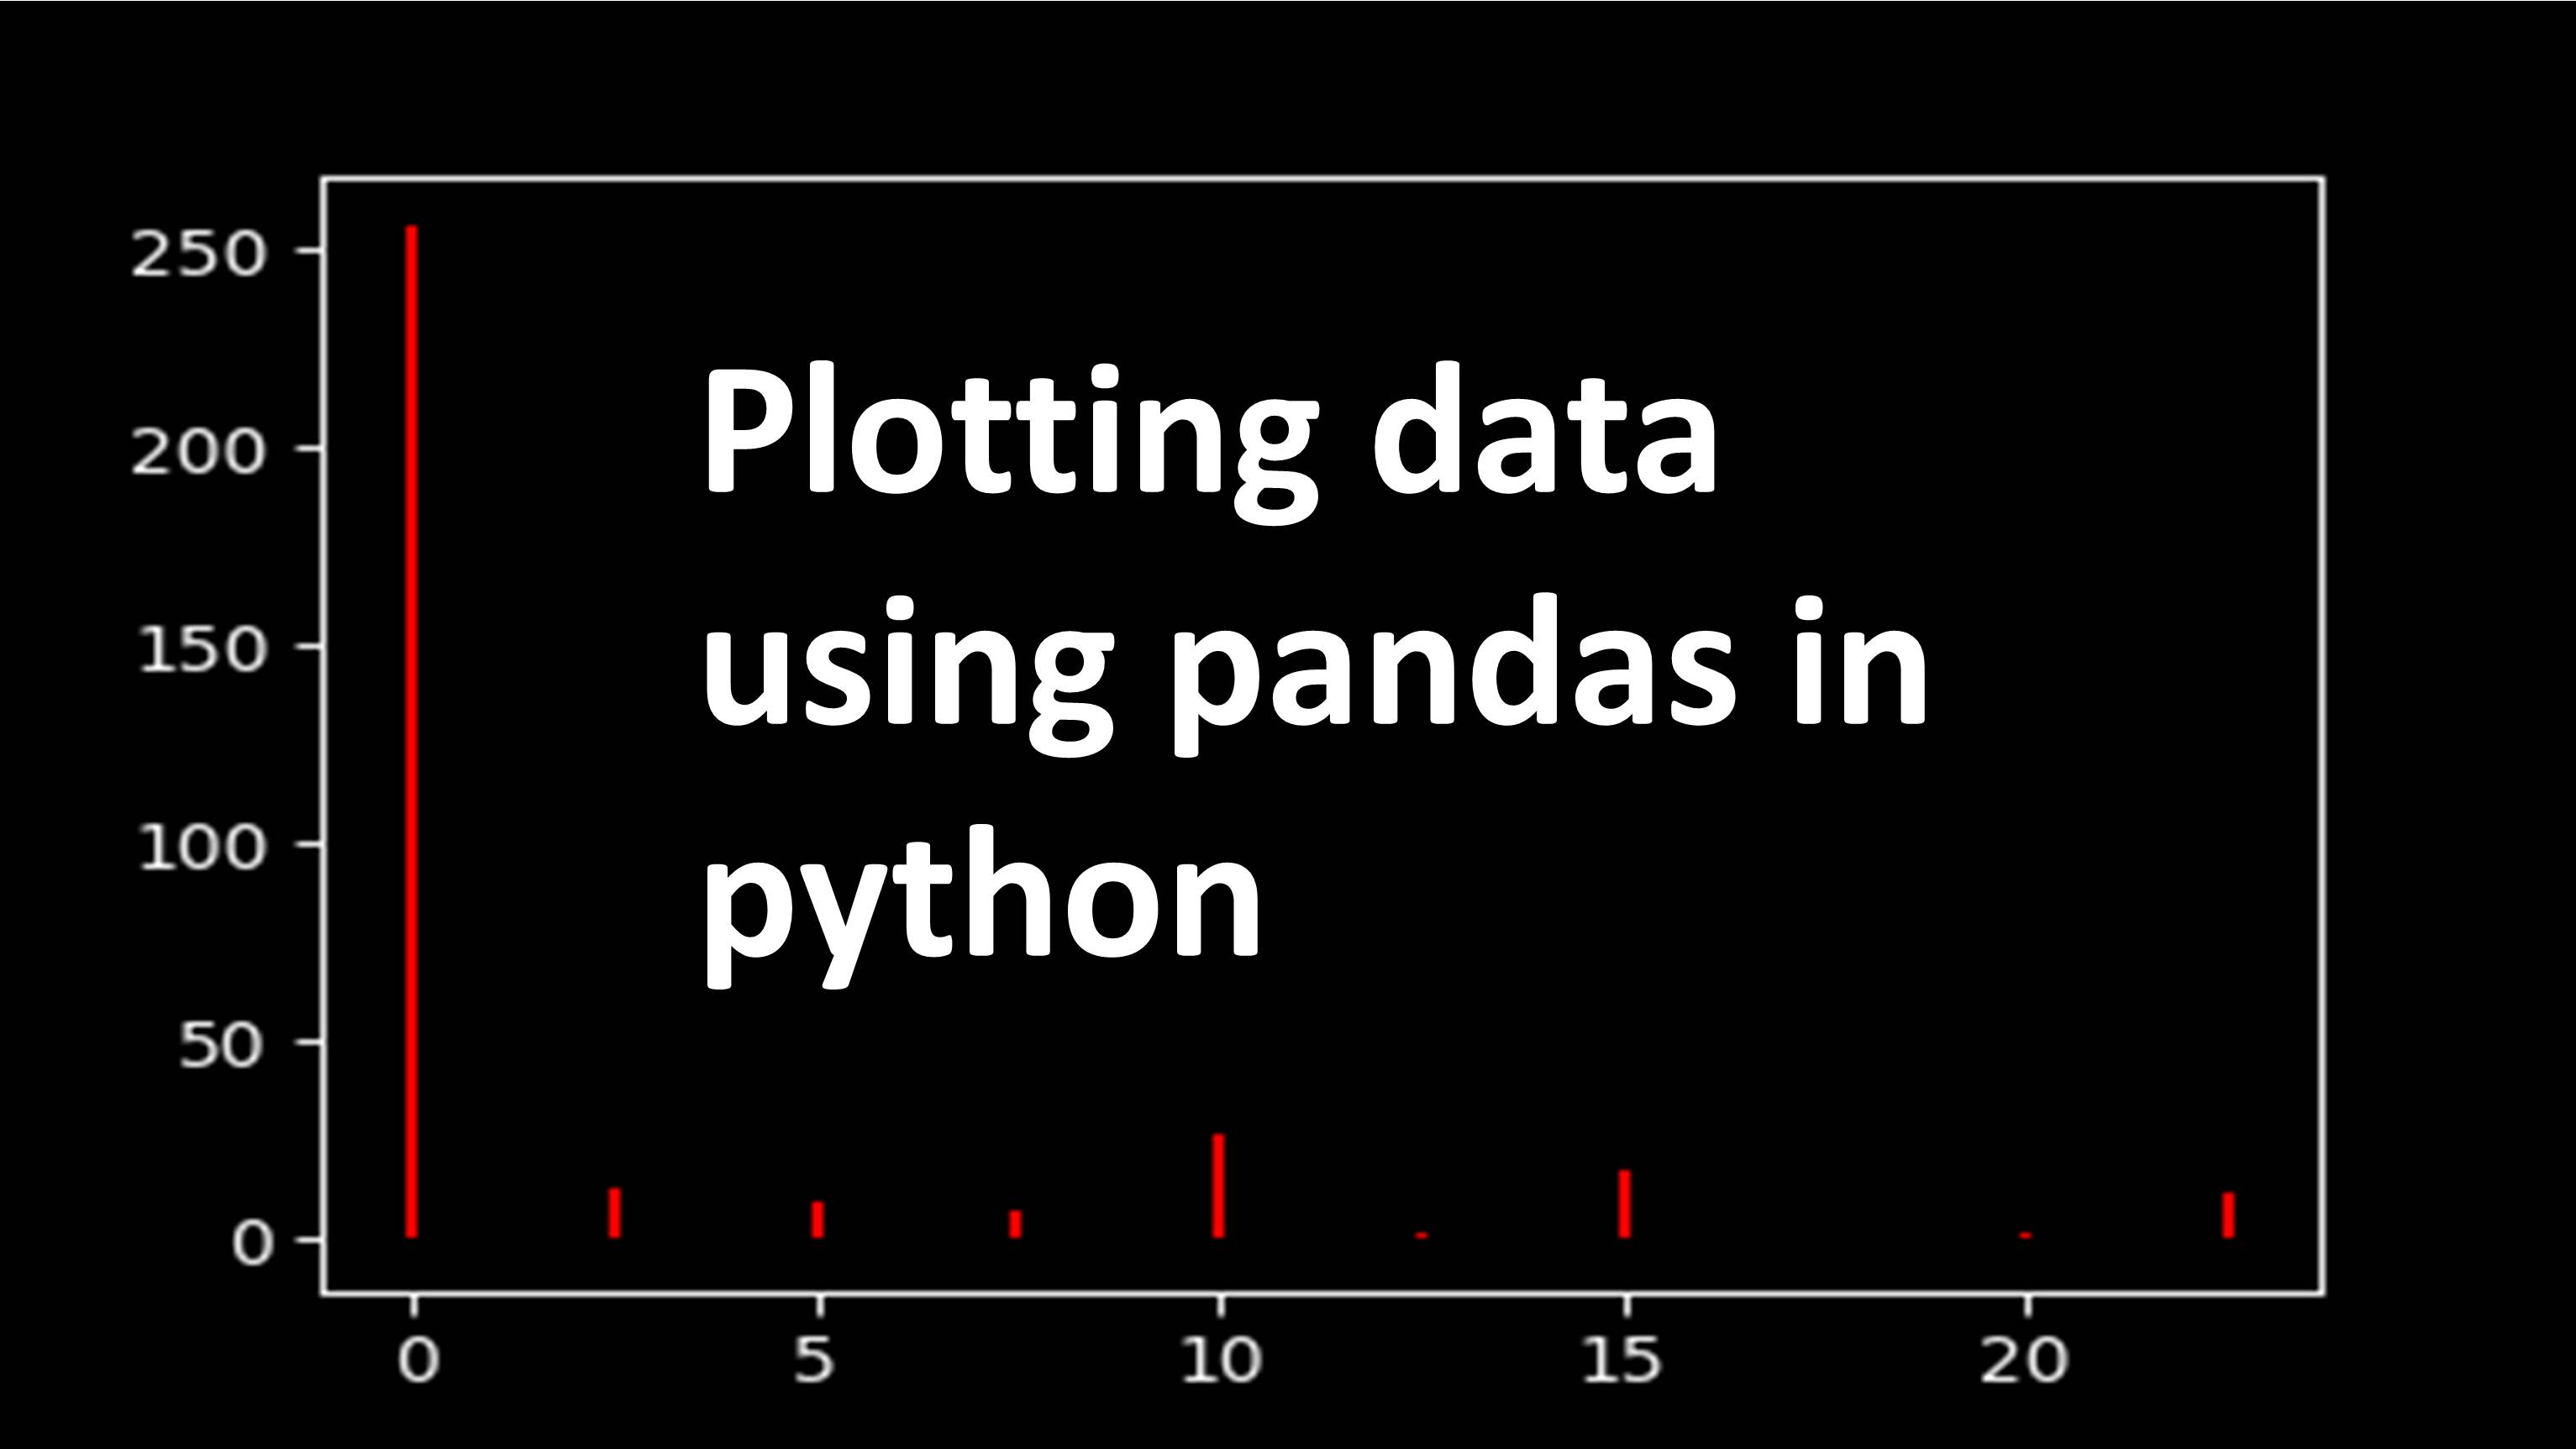 Plotting data using pandas in python